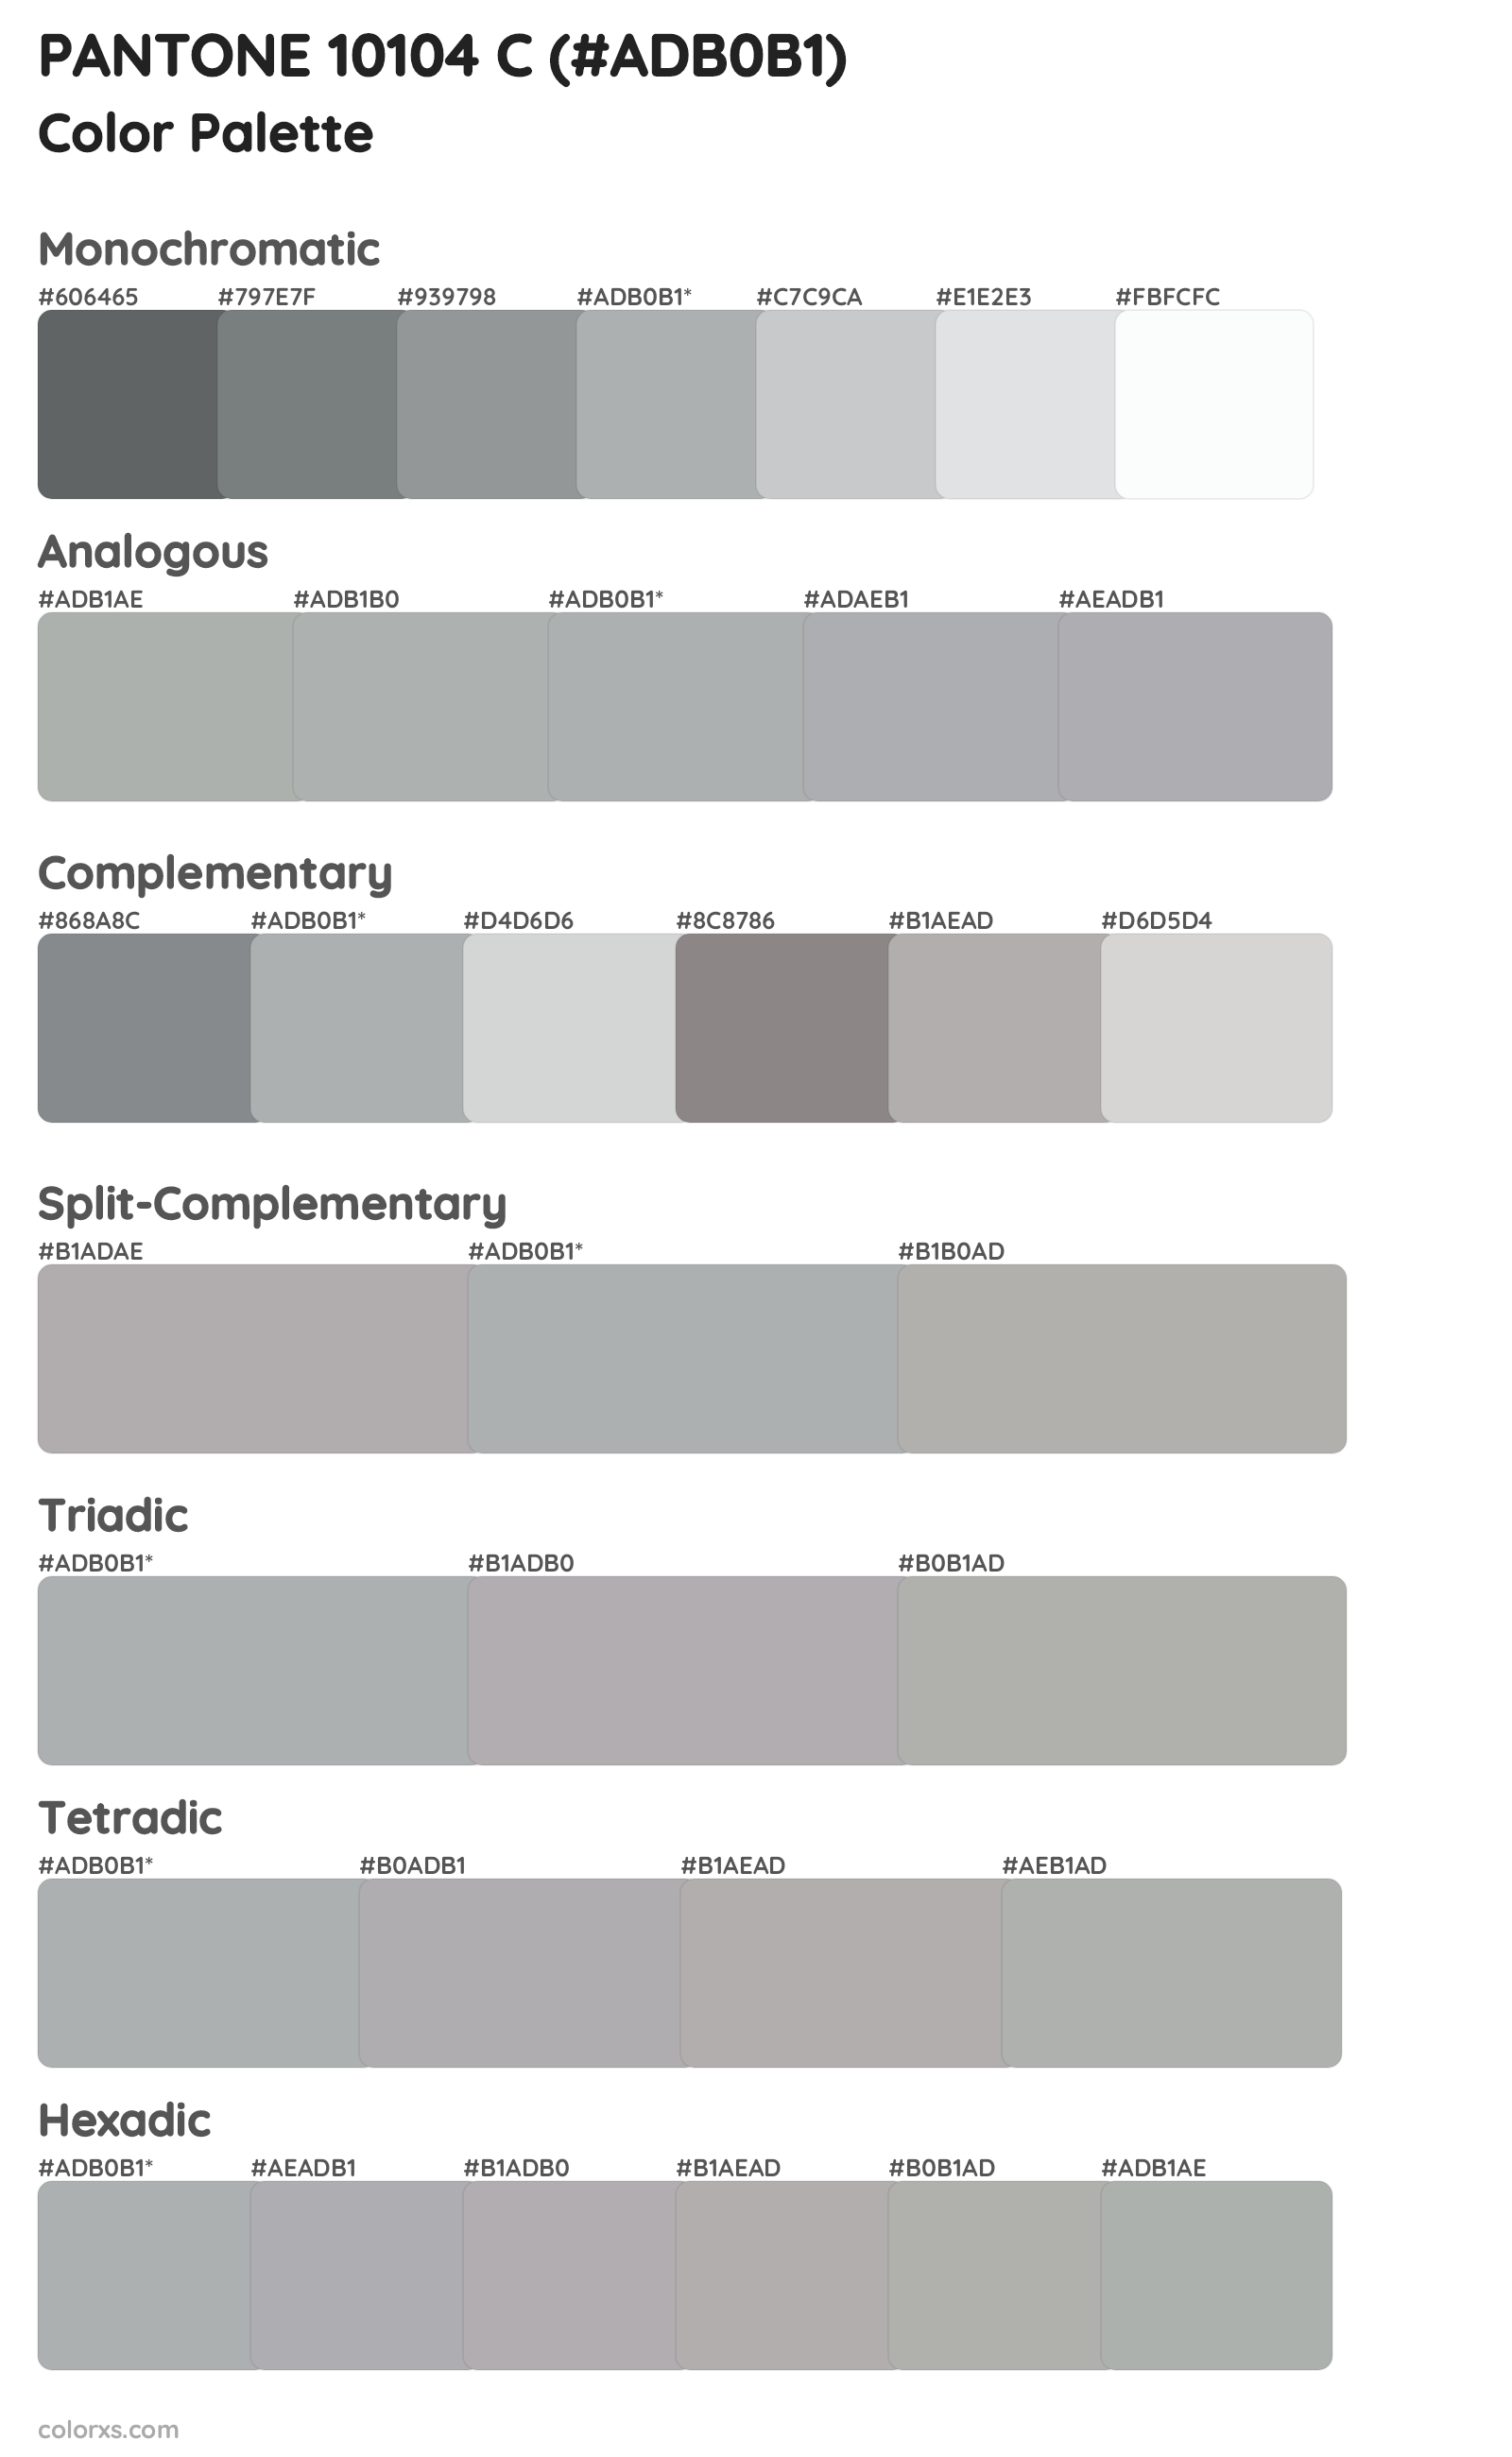 PANTONE 10104 C Color Scheme Palettes